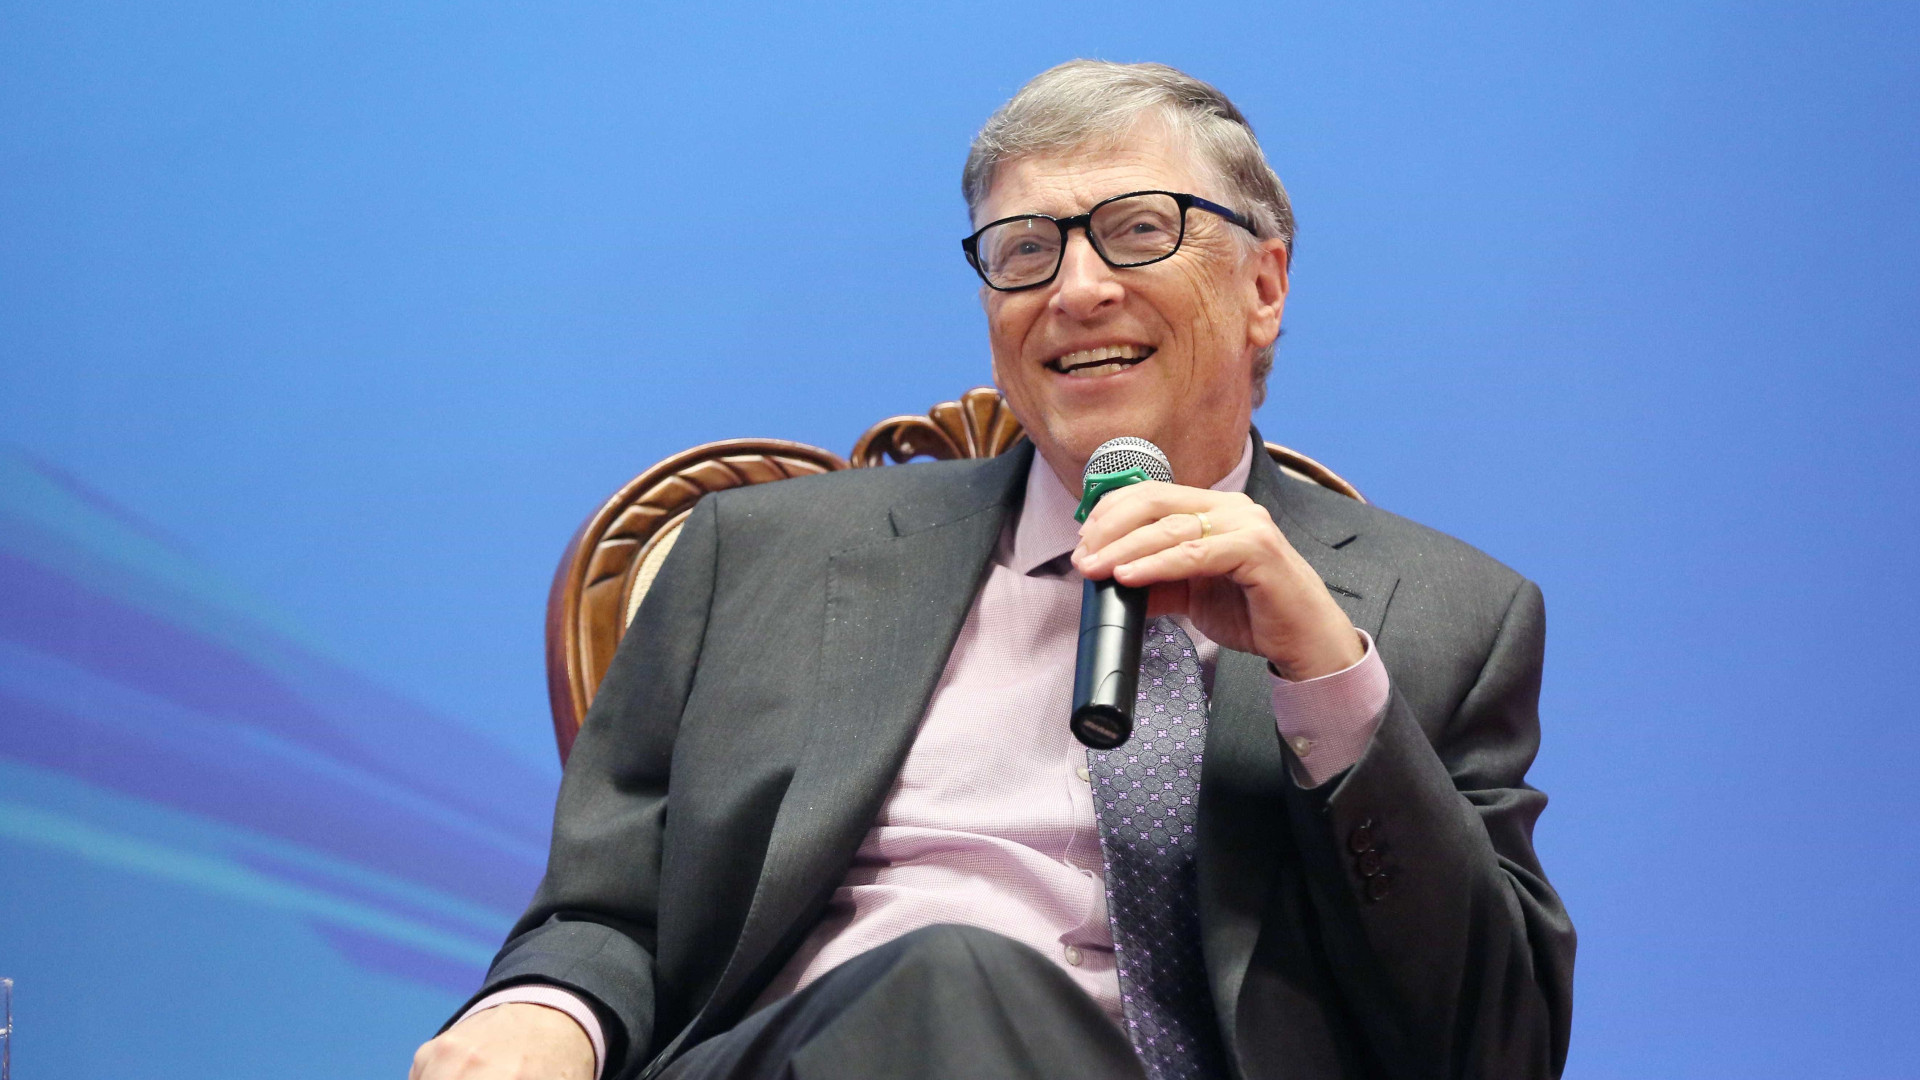 Fique por dentro do próximo grande investimento de Bill Gates